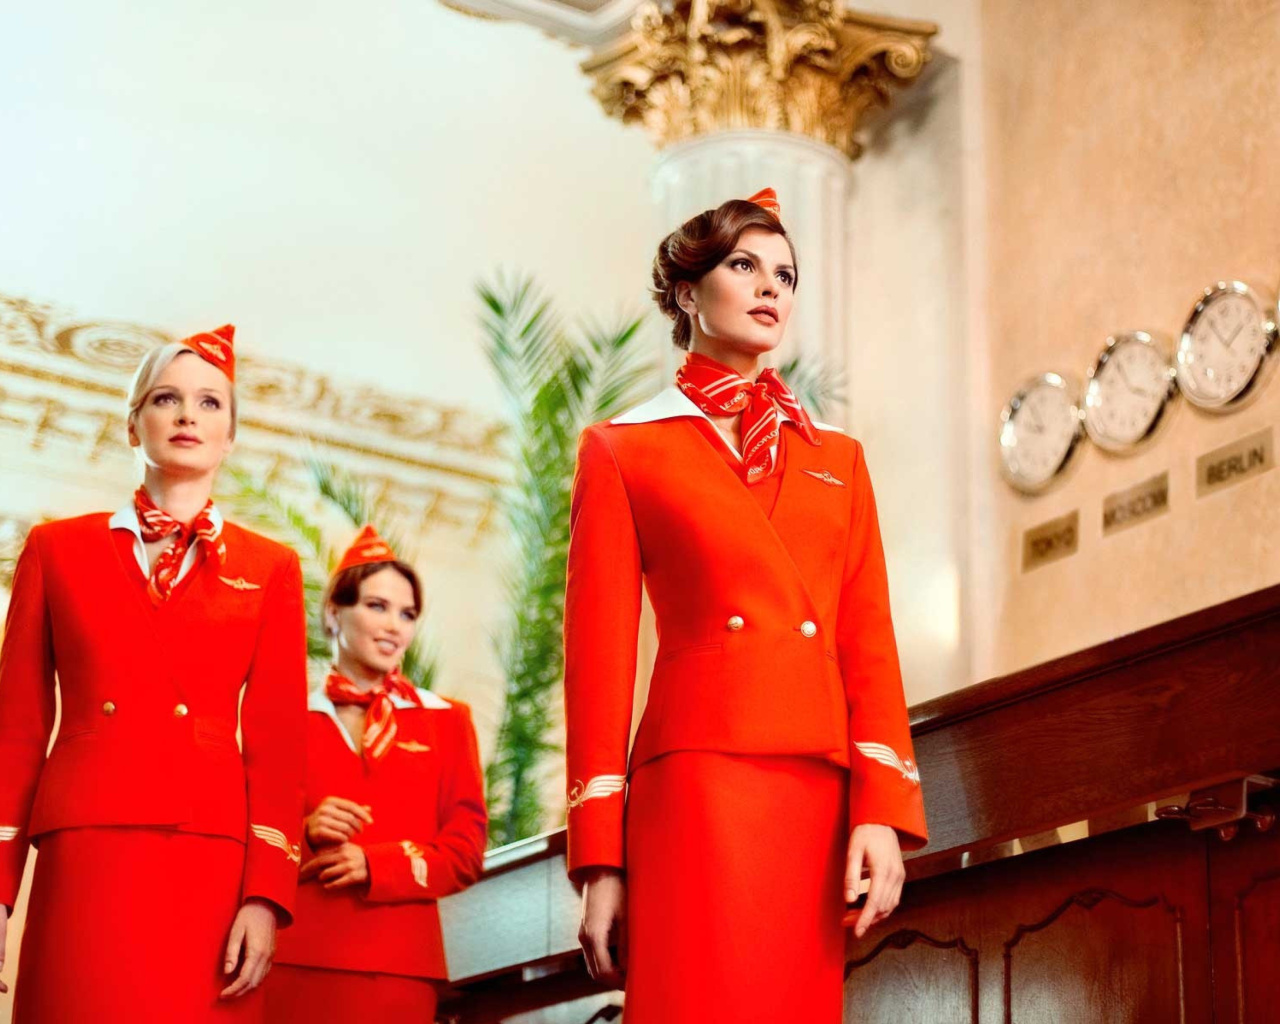 Aeroflot Flight attendant screenshot #1 1280x1024